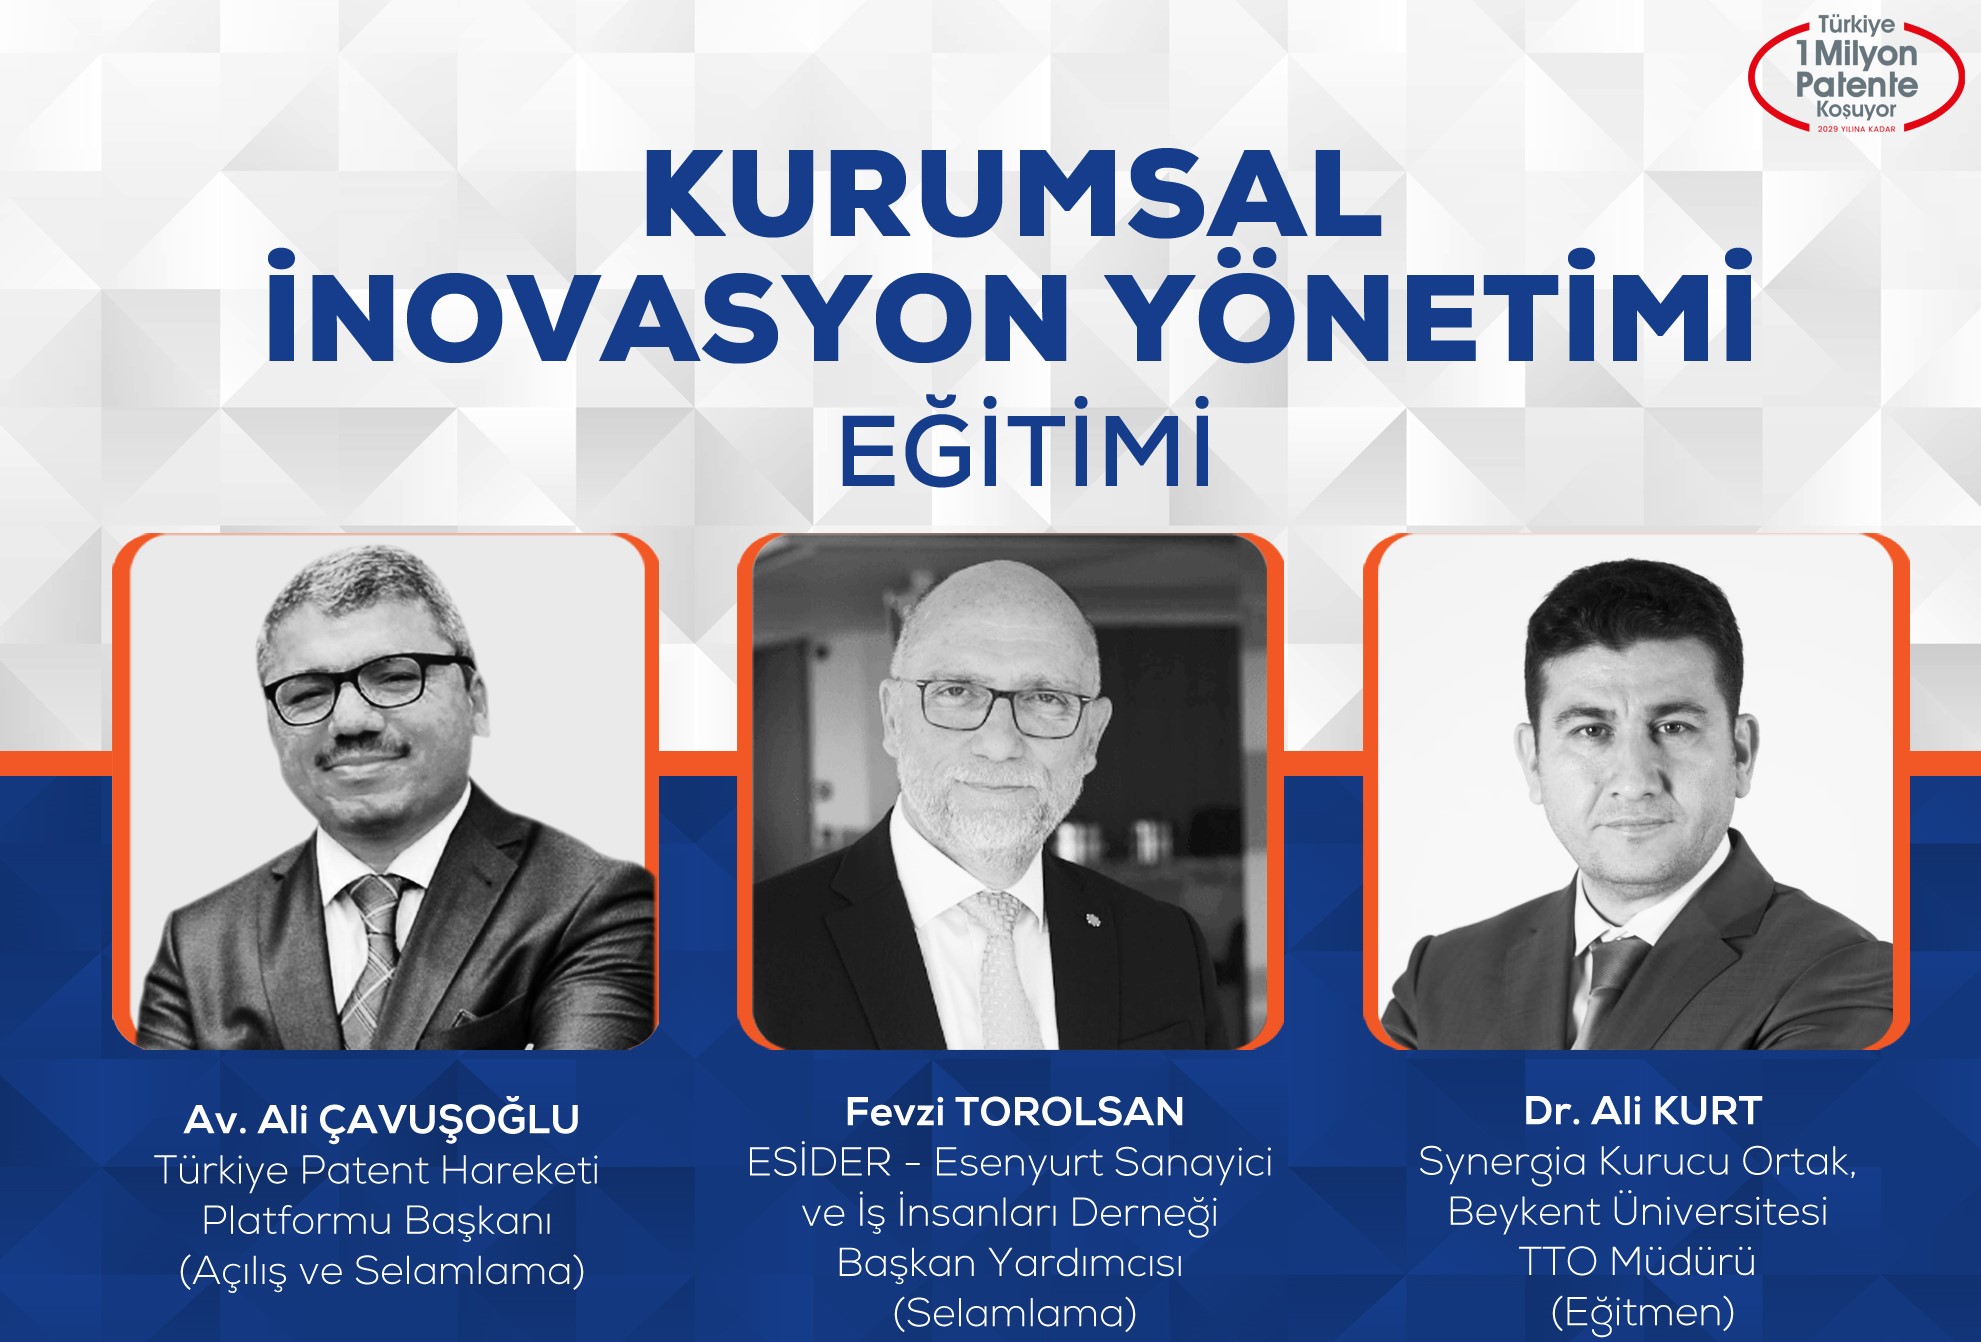 https://turkiyepatenthareketi.org/wp-content/uploads/2023/03/2022.08.24-kurumsal-inovasyon-yonetimi-egitimi-davetiye-1.jpg